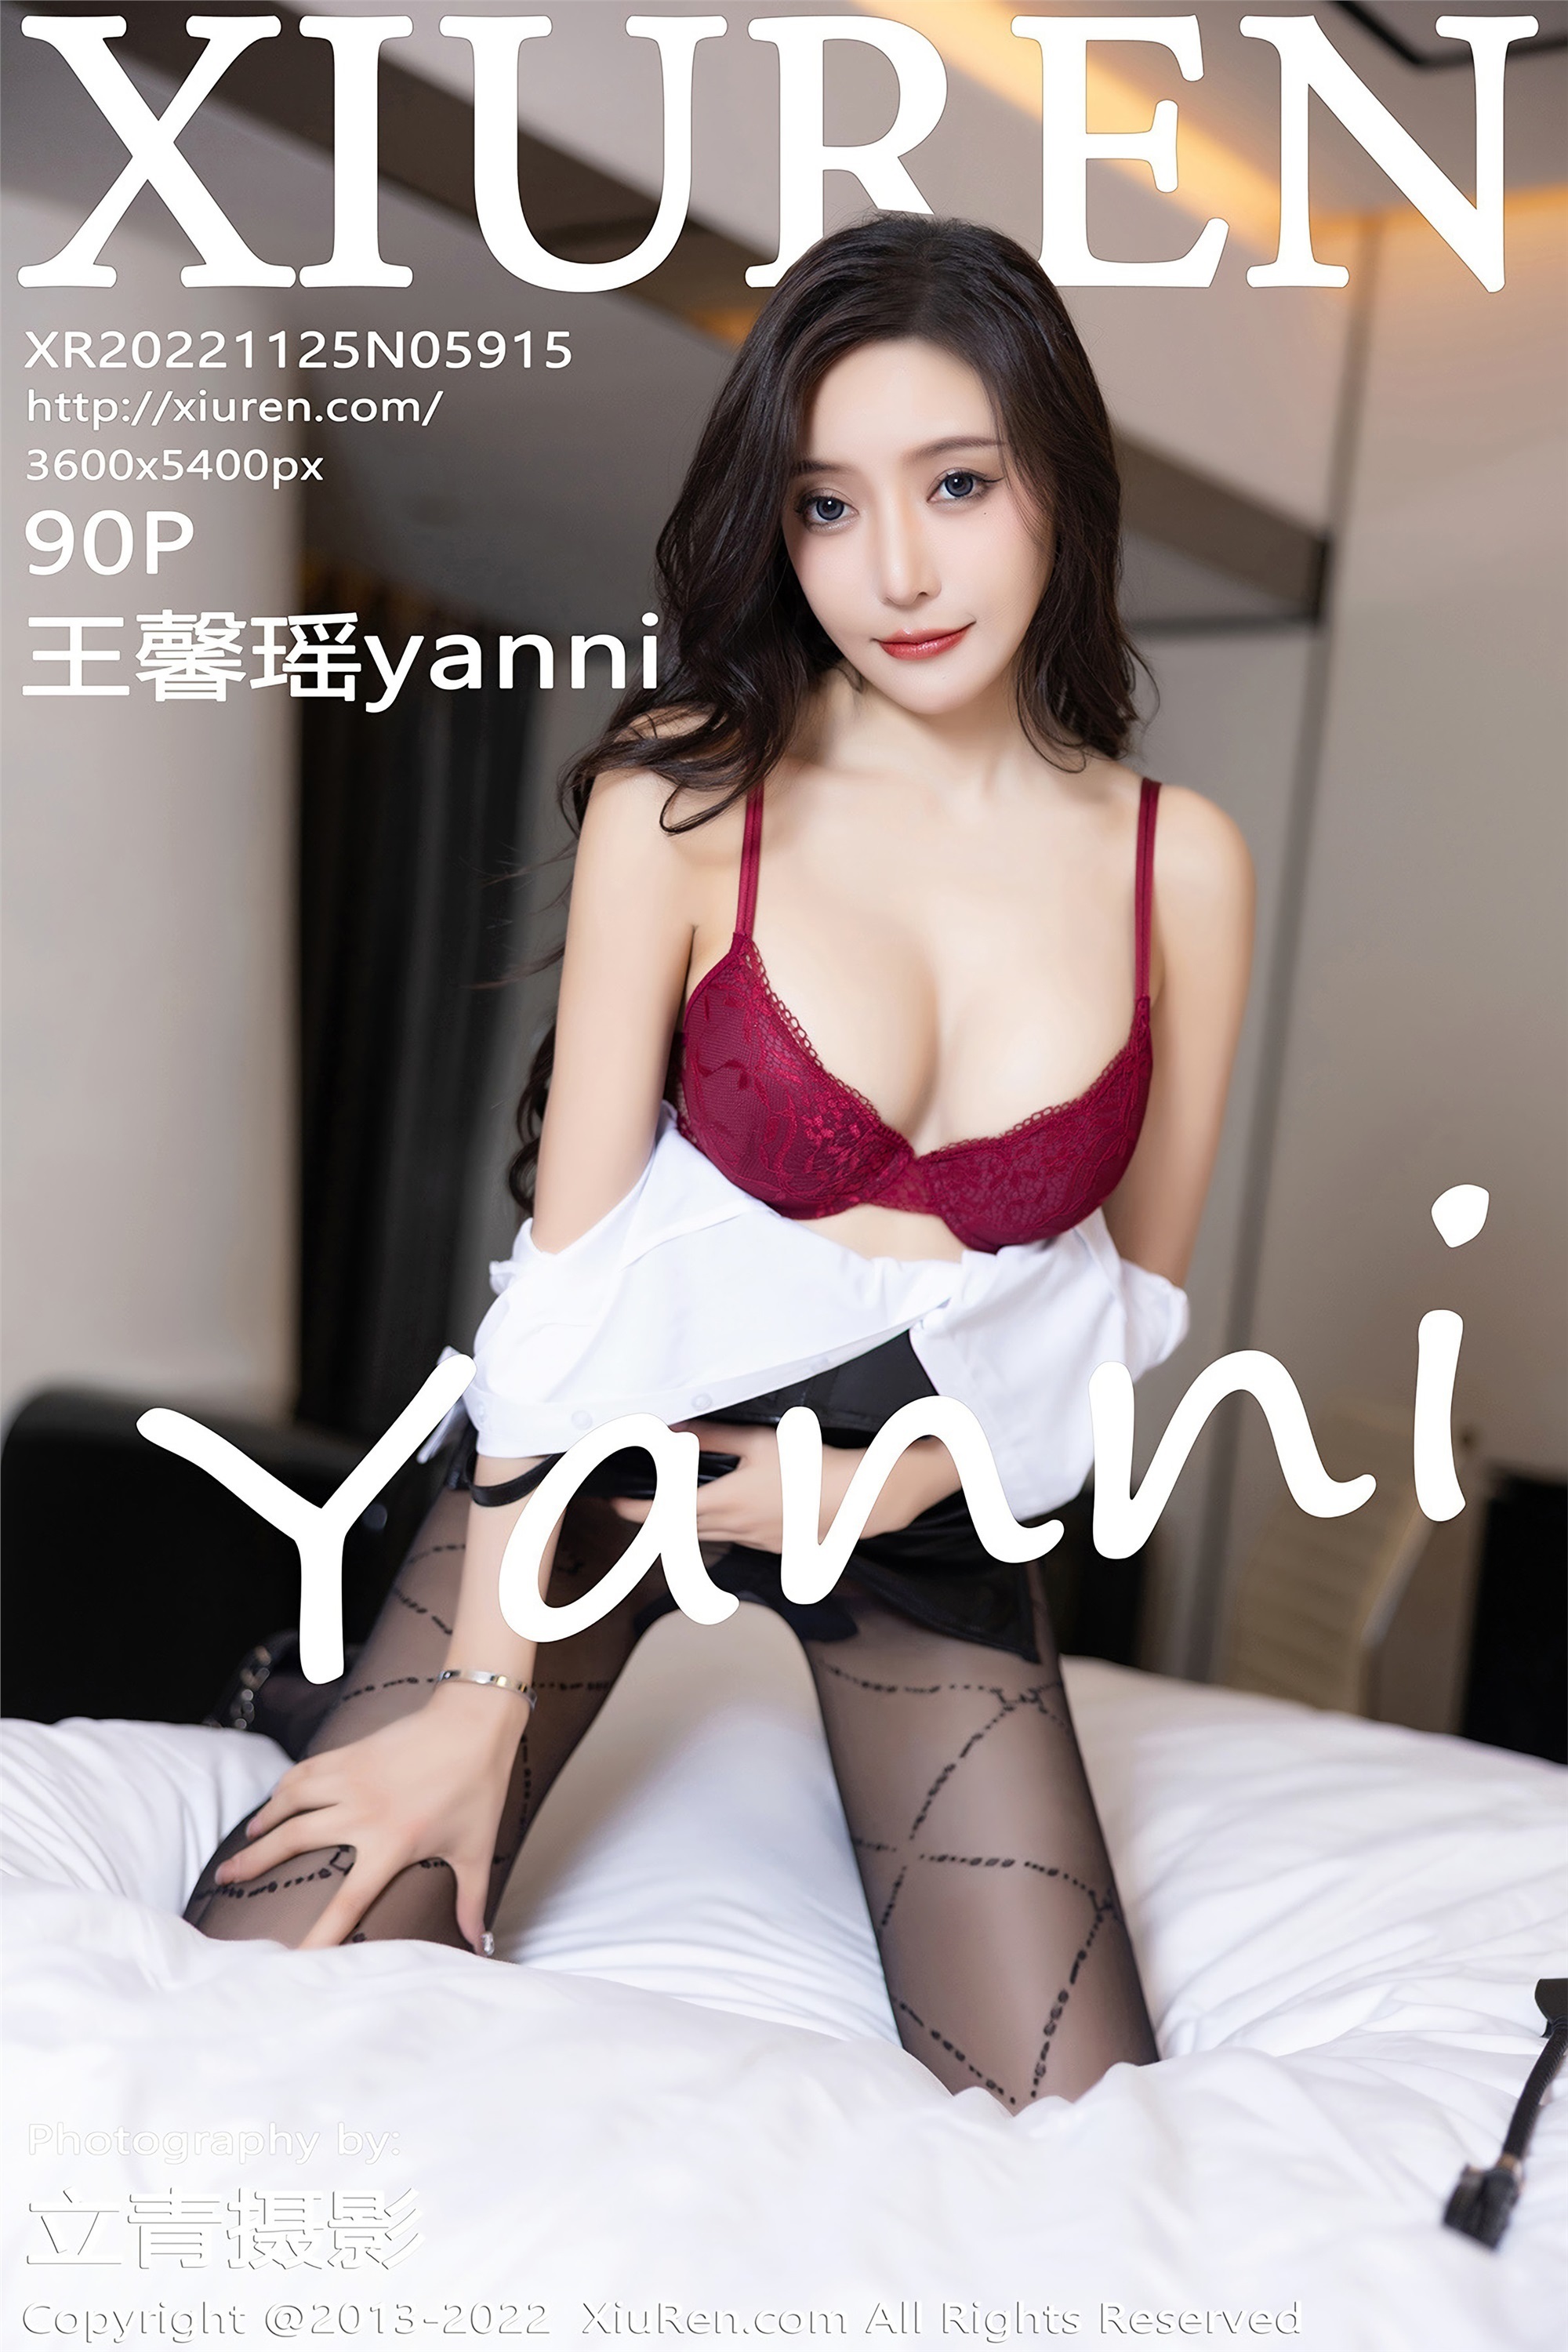 Xiuren 2022.11.25 NO.5915 Xinyao Wang yanni